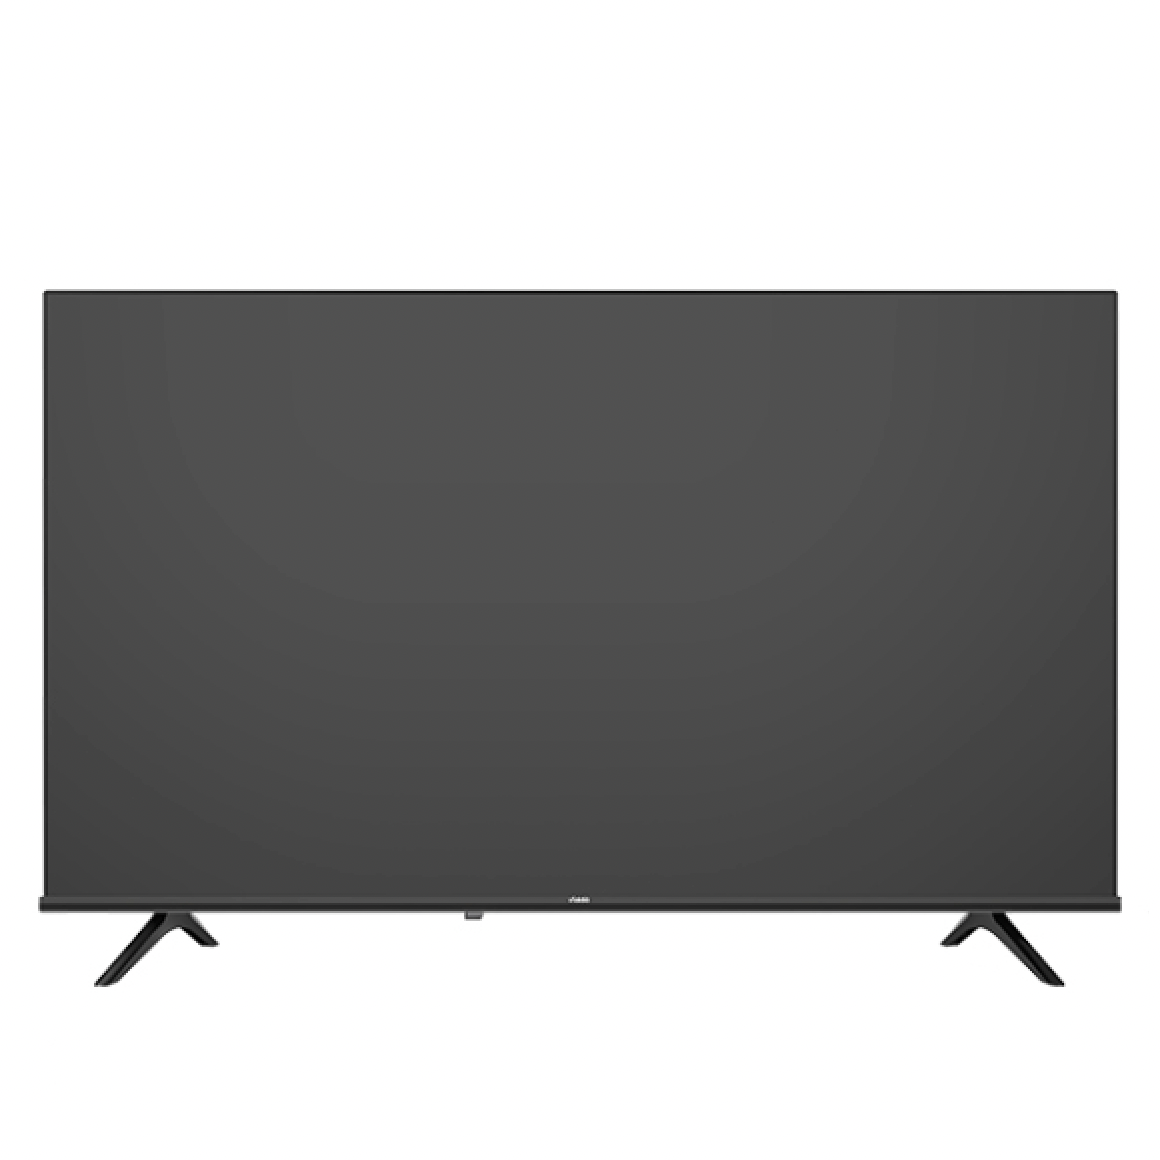 Vidda R43 海信电视 43英寸全高清超薄全面屏电视 智慧屏 1G+8G 845.6元